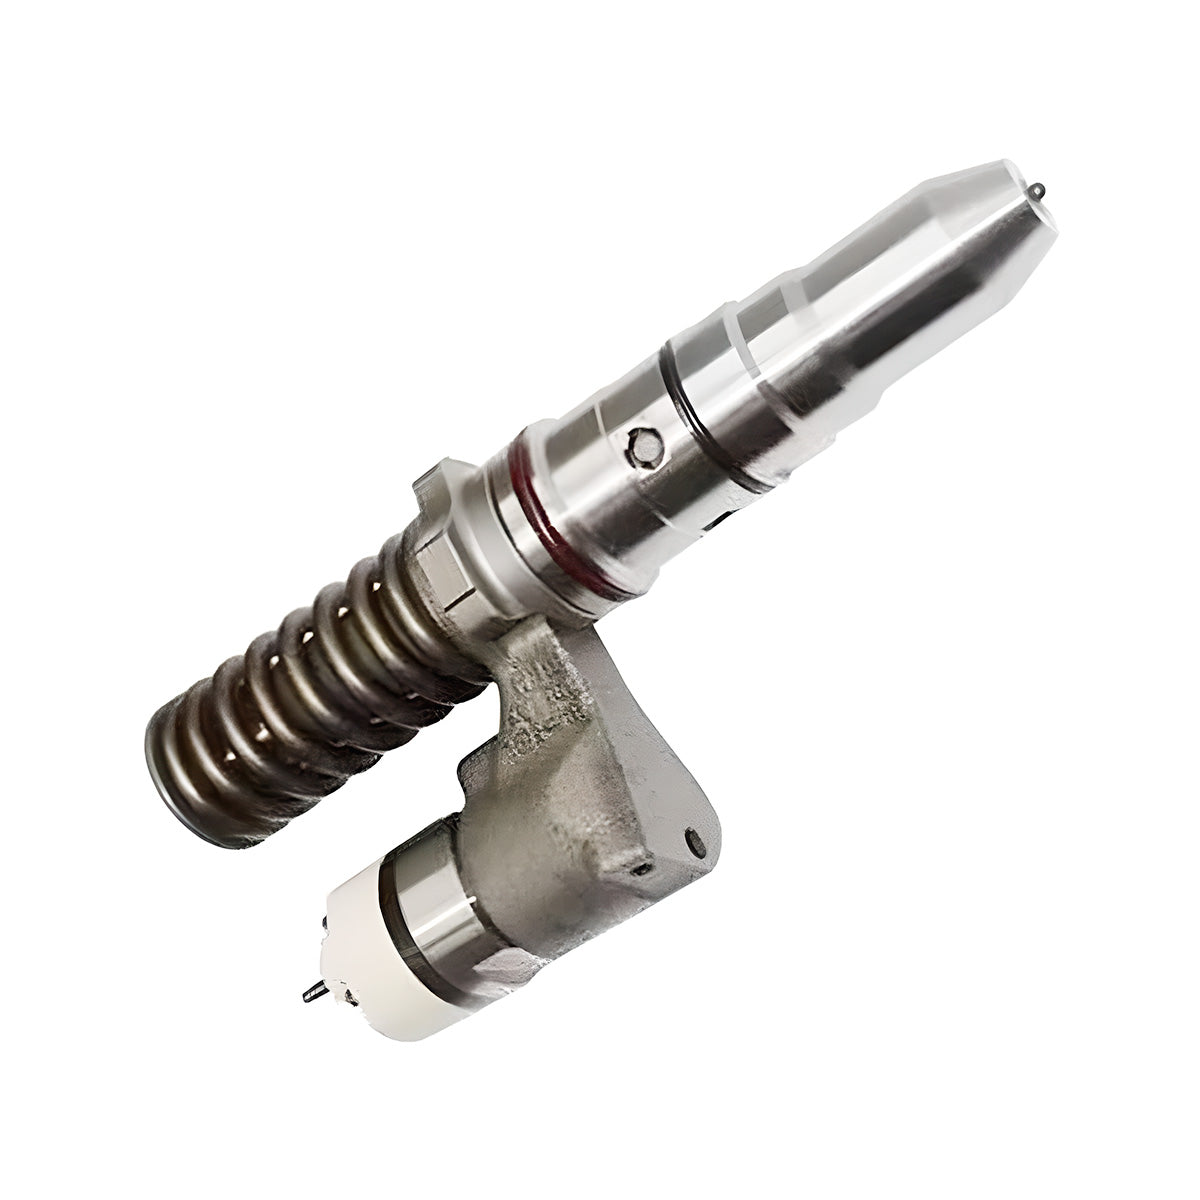 392-0206 3920206 Fuel Injector for Caterpillar 992G 845G 3516 3512 Engine - Sinocmp